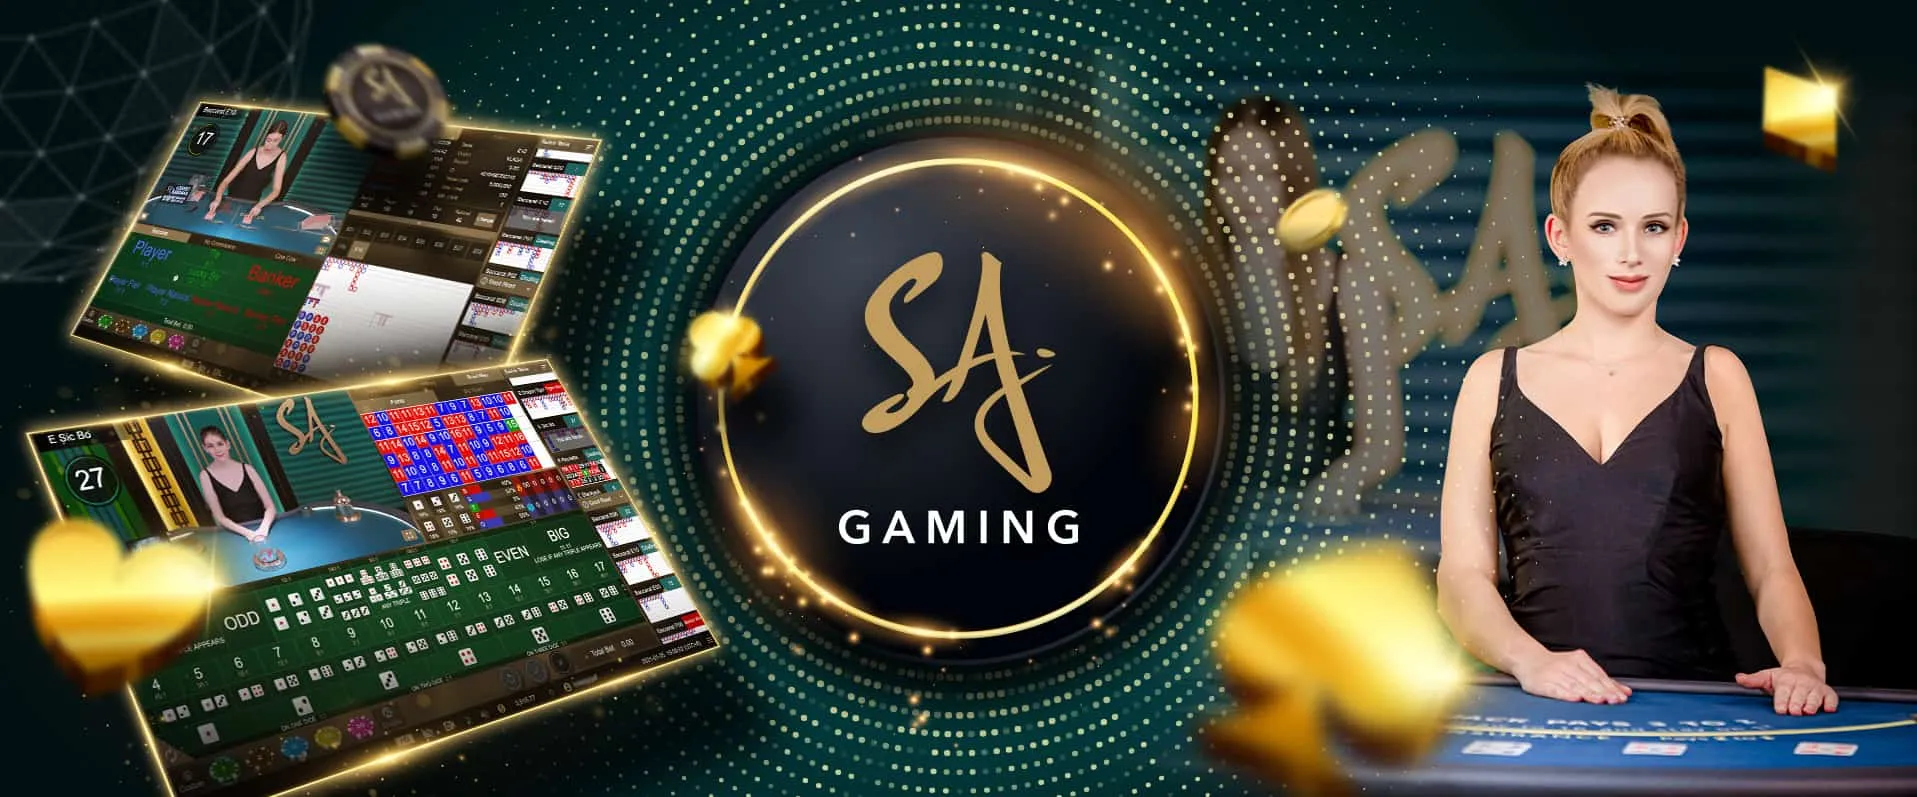 SA Gaming banner